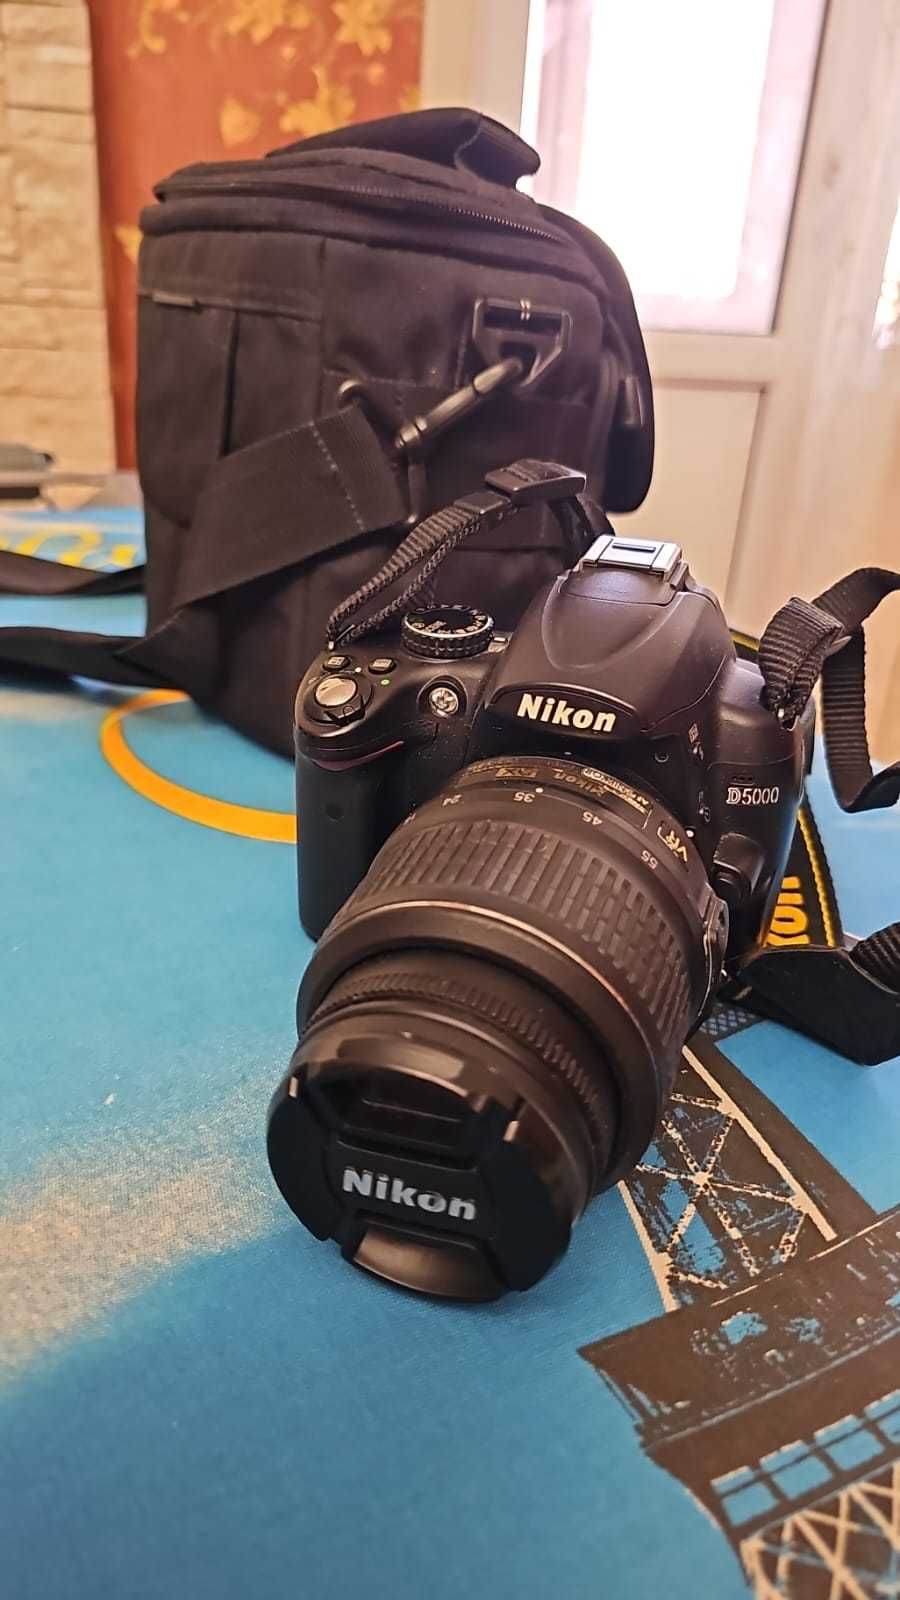 продам новый фото аппарат Nikon DX